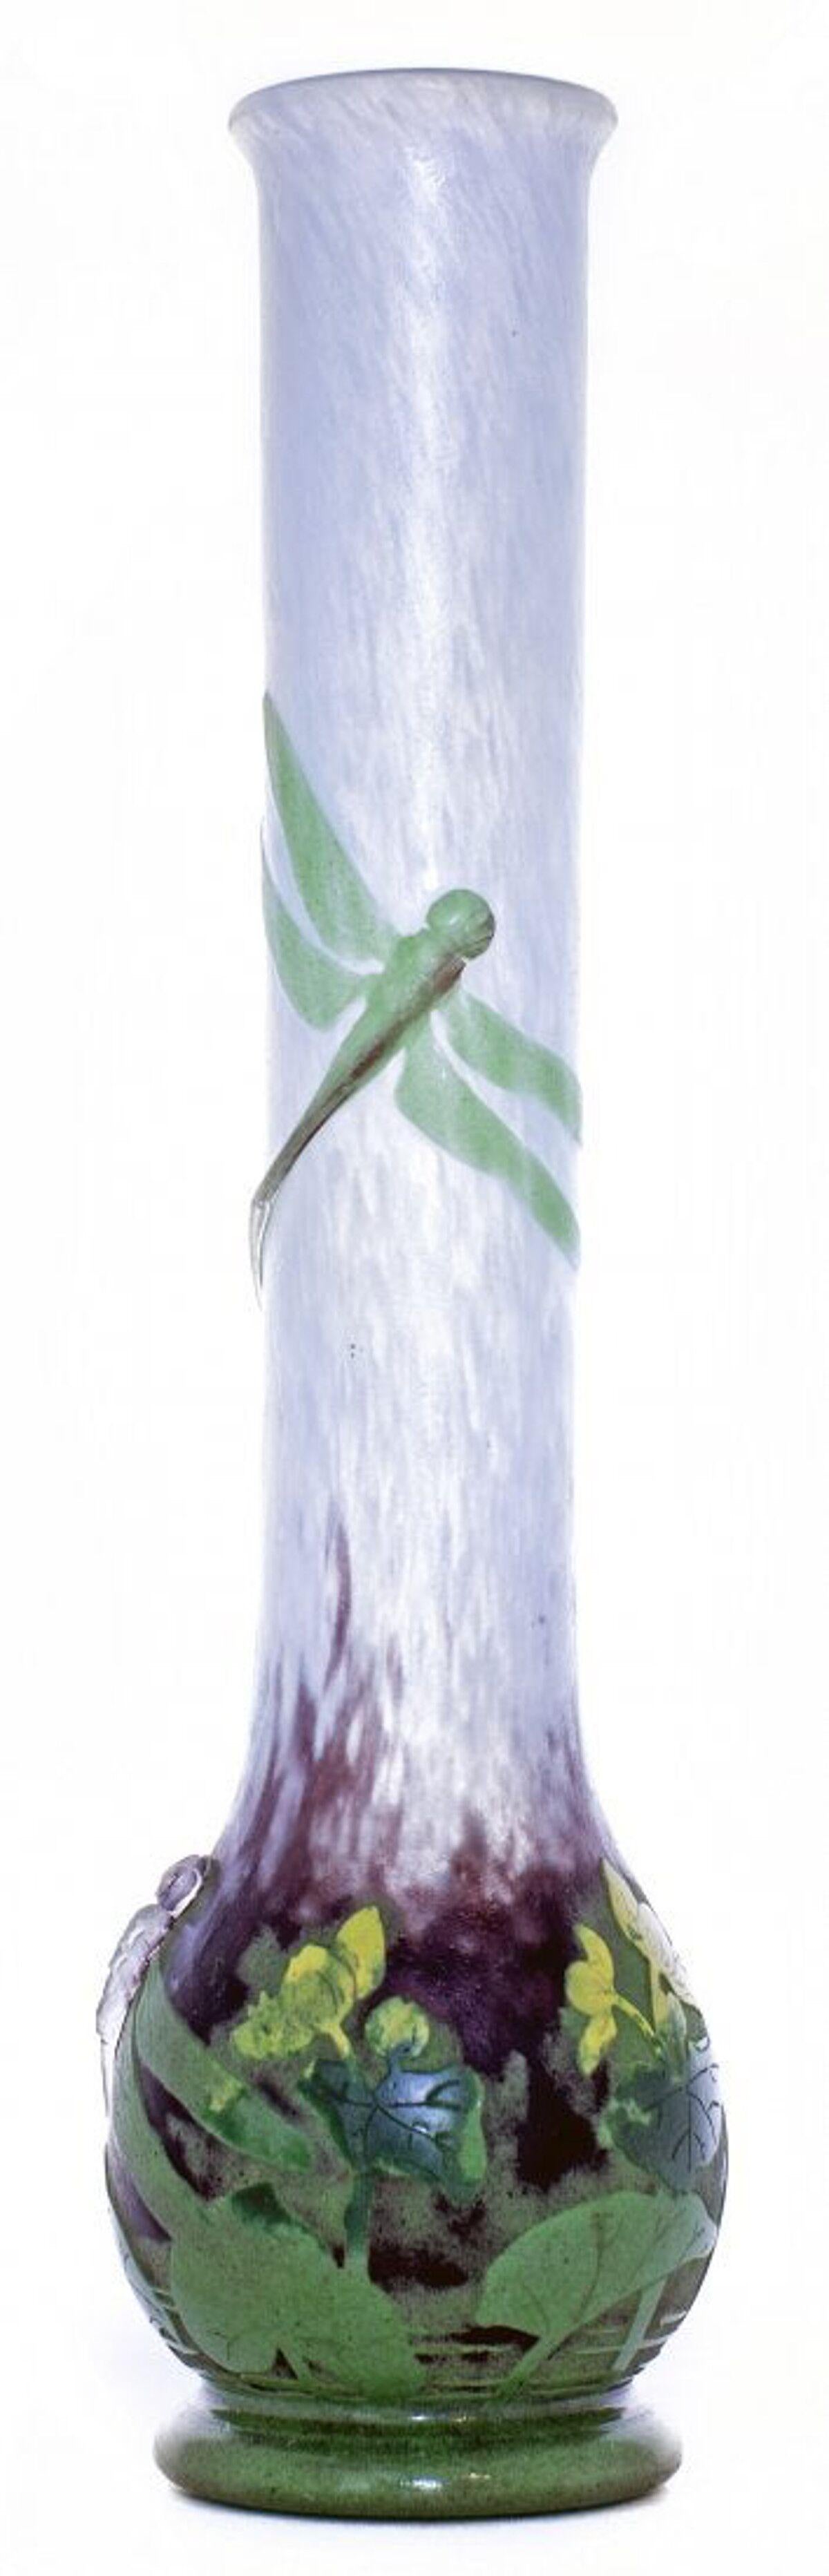 Aus der Pinhas-Sammlung
Sehr feine radgeschliffene Glasvase Daum Nancy Cameo, Frankreich, um 1910
mit appliziertem Libellendekor, verziert mit gelben und grünen Blüten auf meergrünem und opalisierendem Grund, auf einem runden Fuß endend
kamee